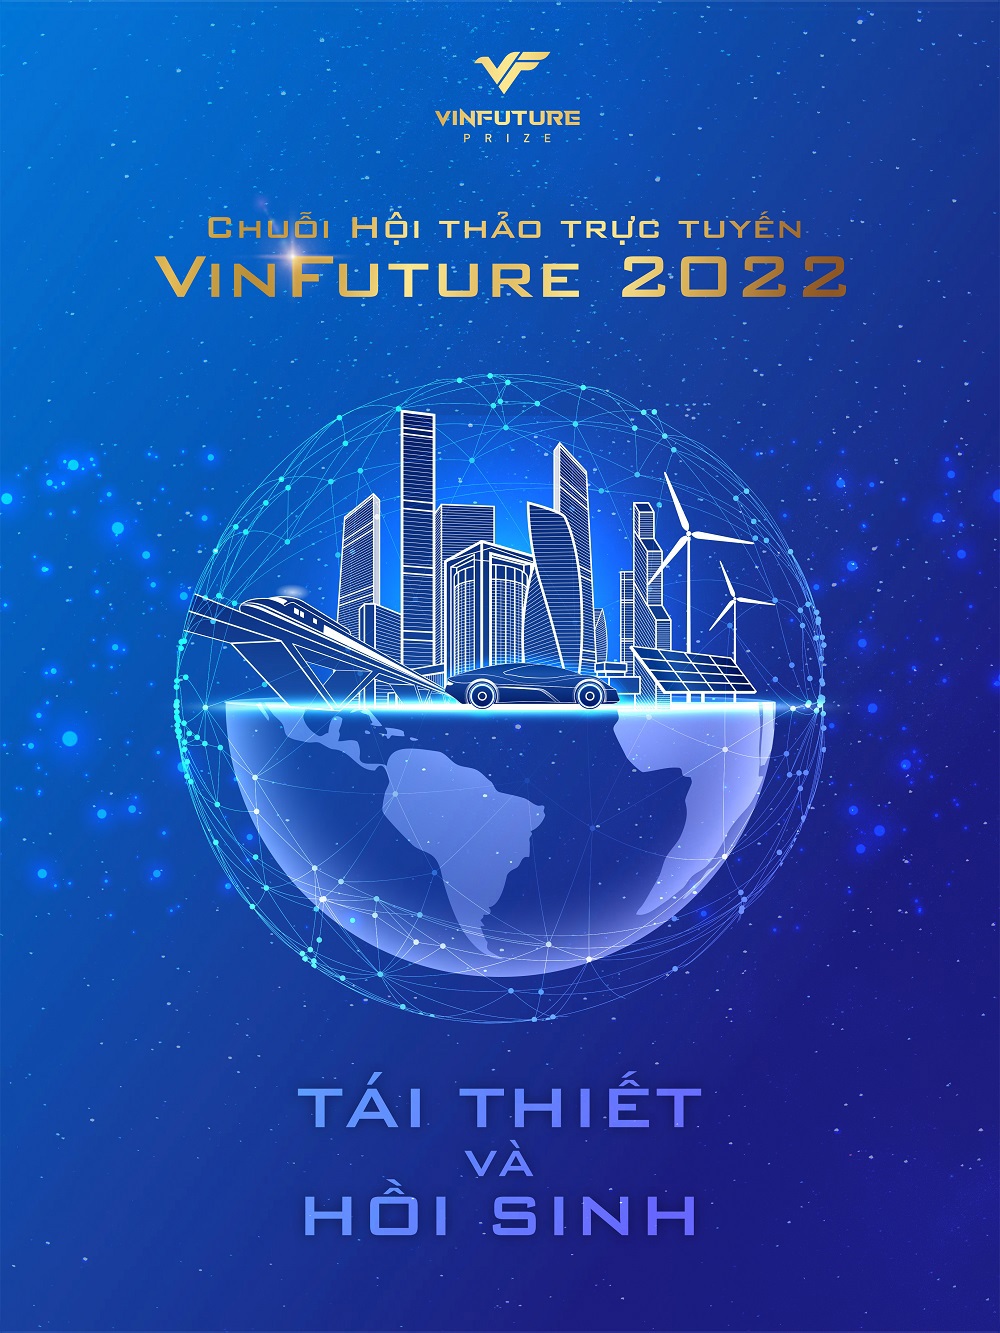 Quỹ VinFuture công bố chuỗi hội thảo trực tuyến cho đối tác đề cử mùa giải 2022. Ảnh VIC.